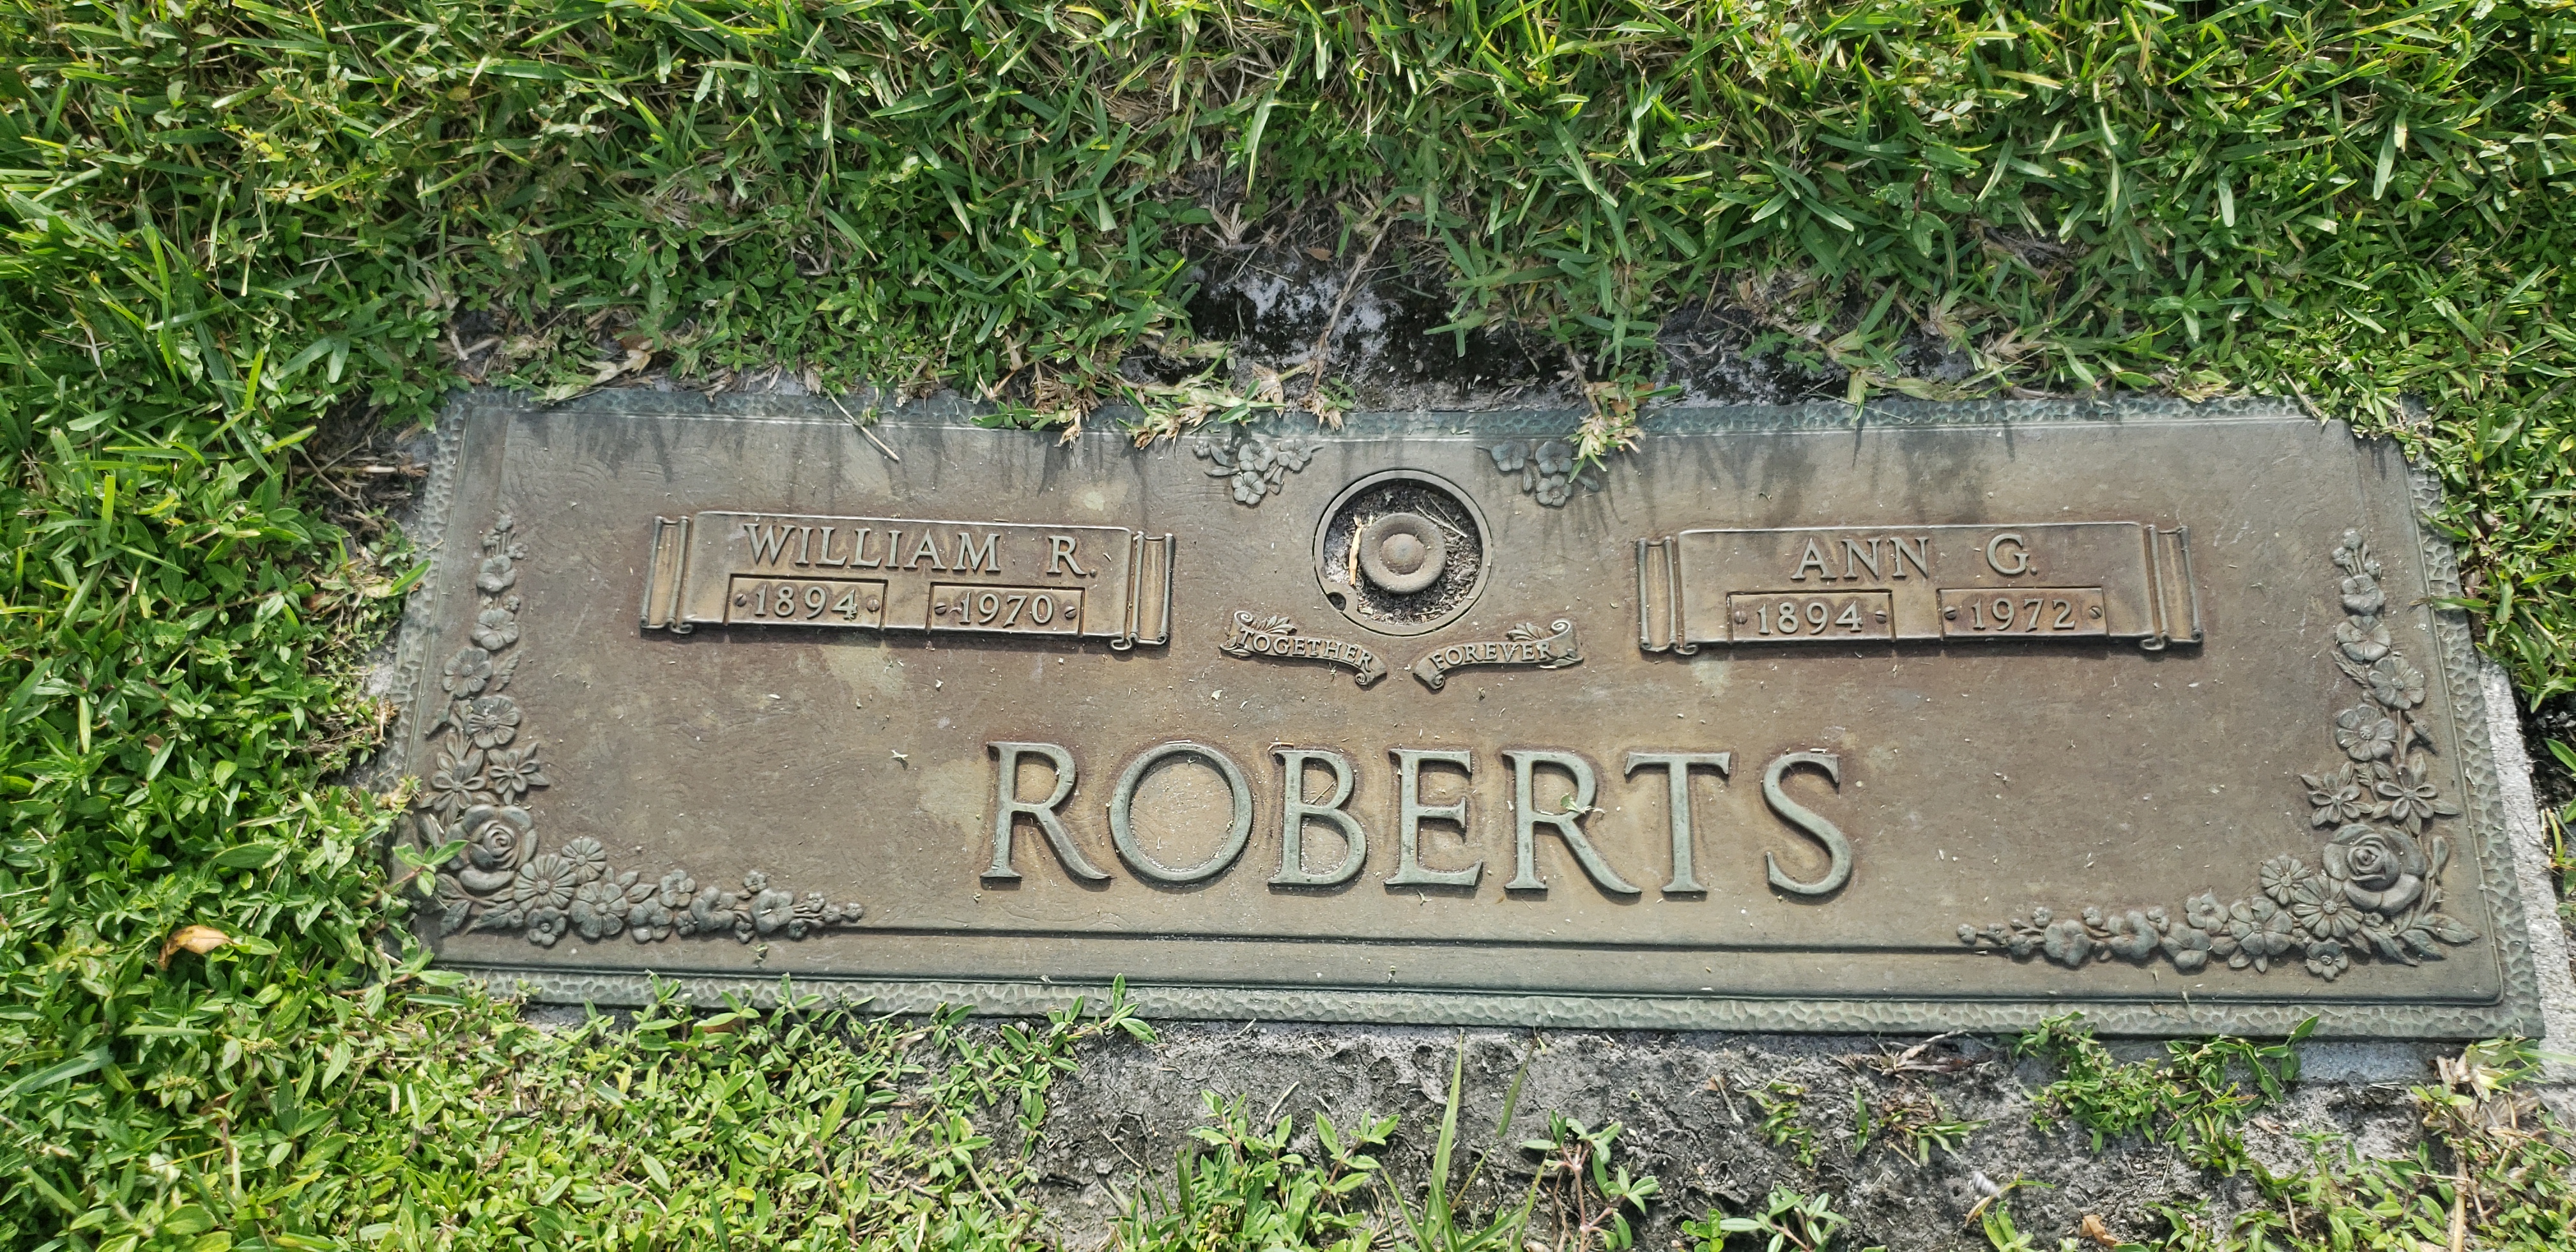 William R Roberts